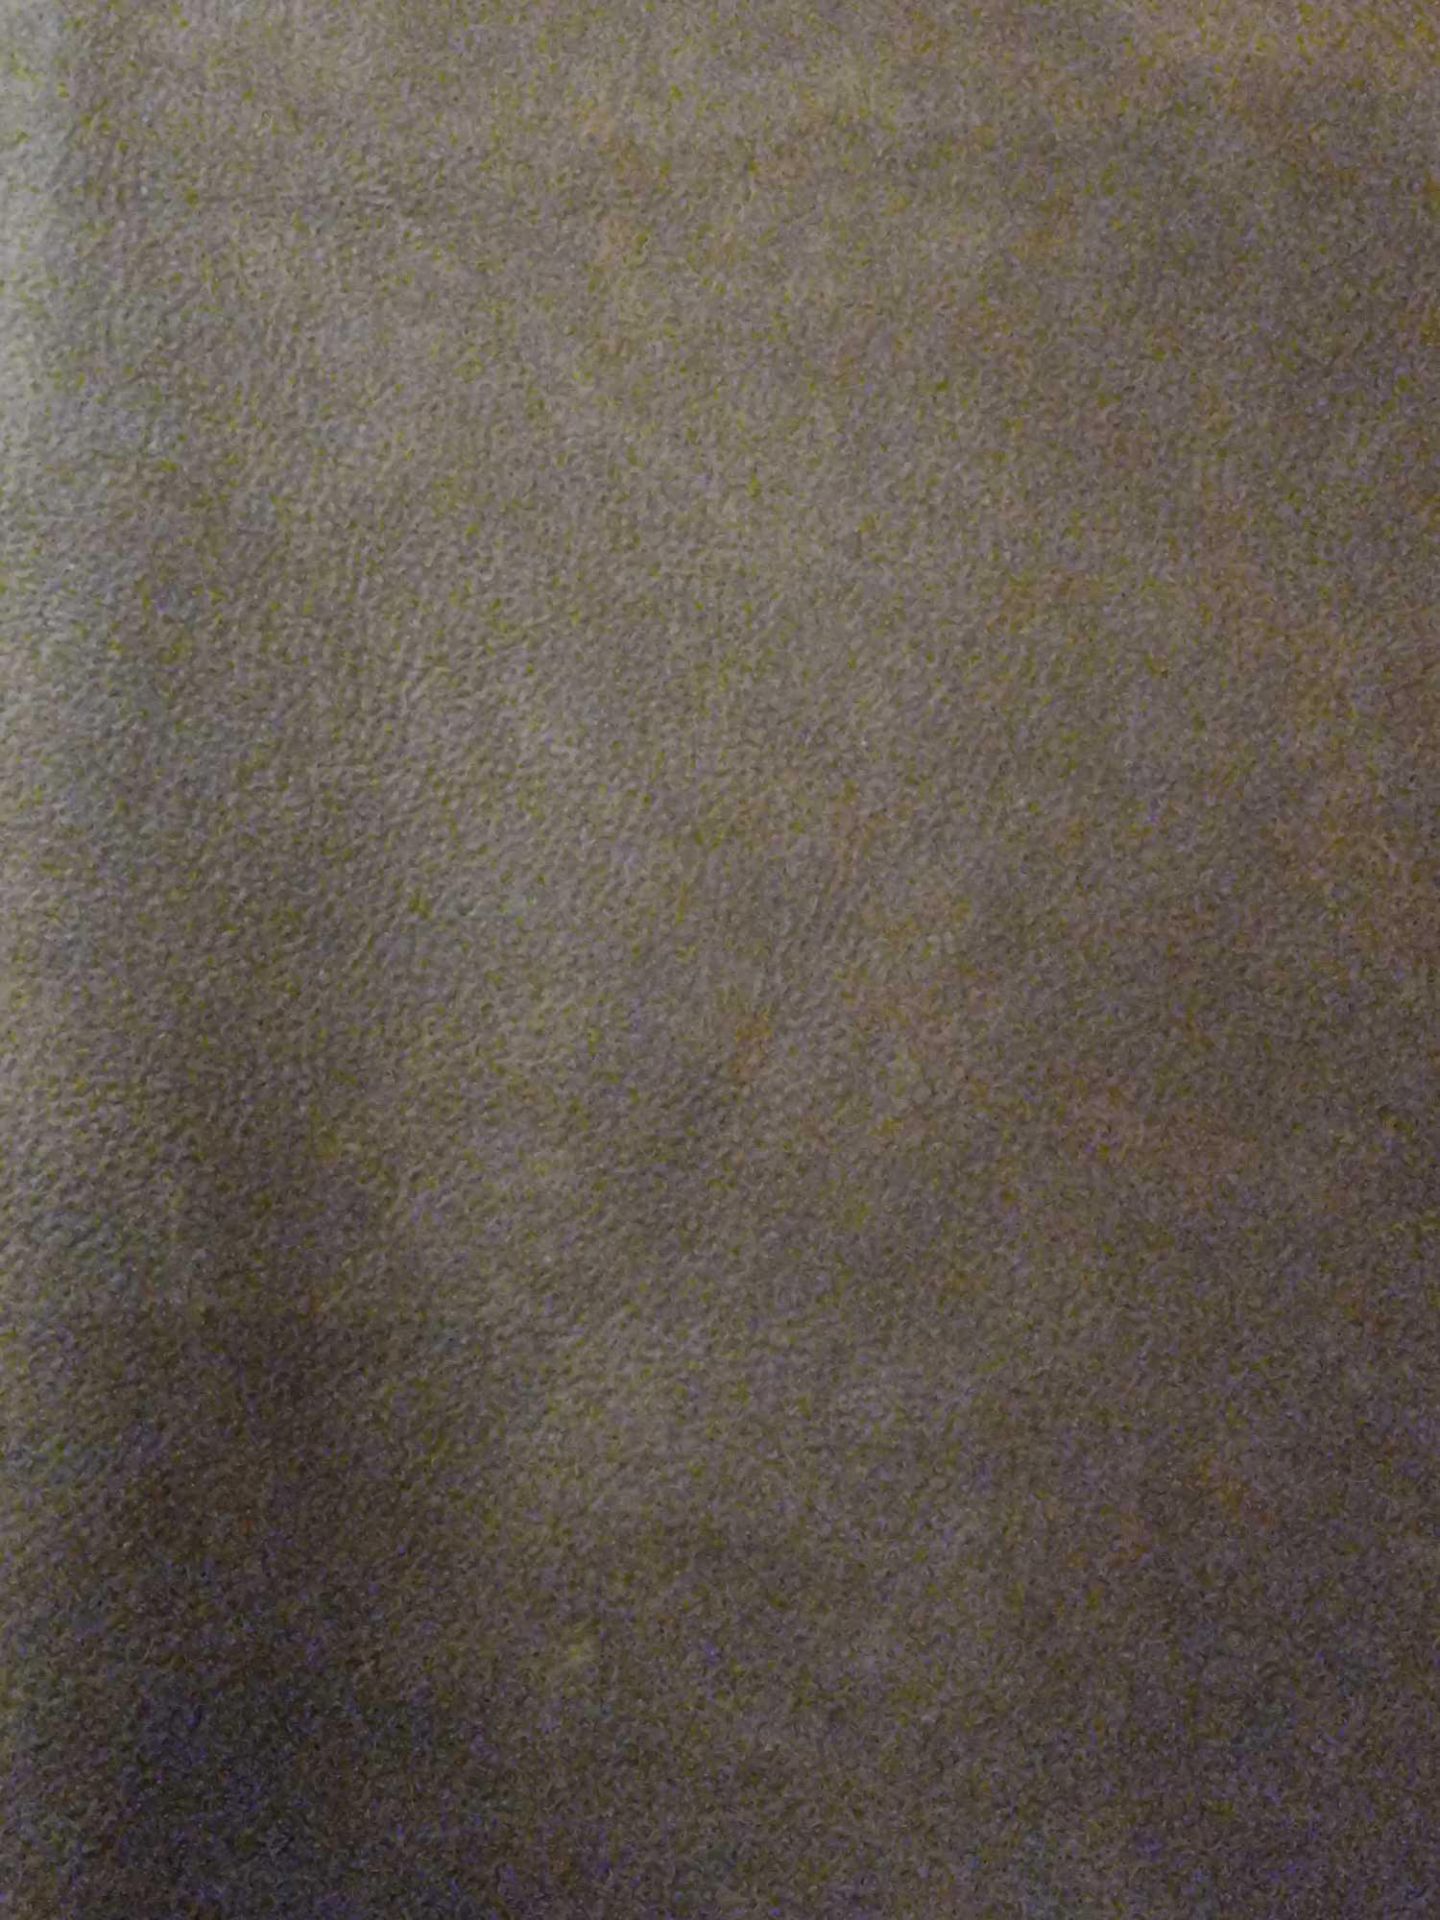 Wallis Dakota Leather Hide approximately 3.6mÂ² 2 x 1.8cm - Image 2 of 2